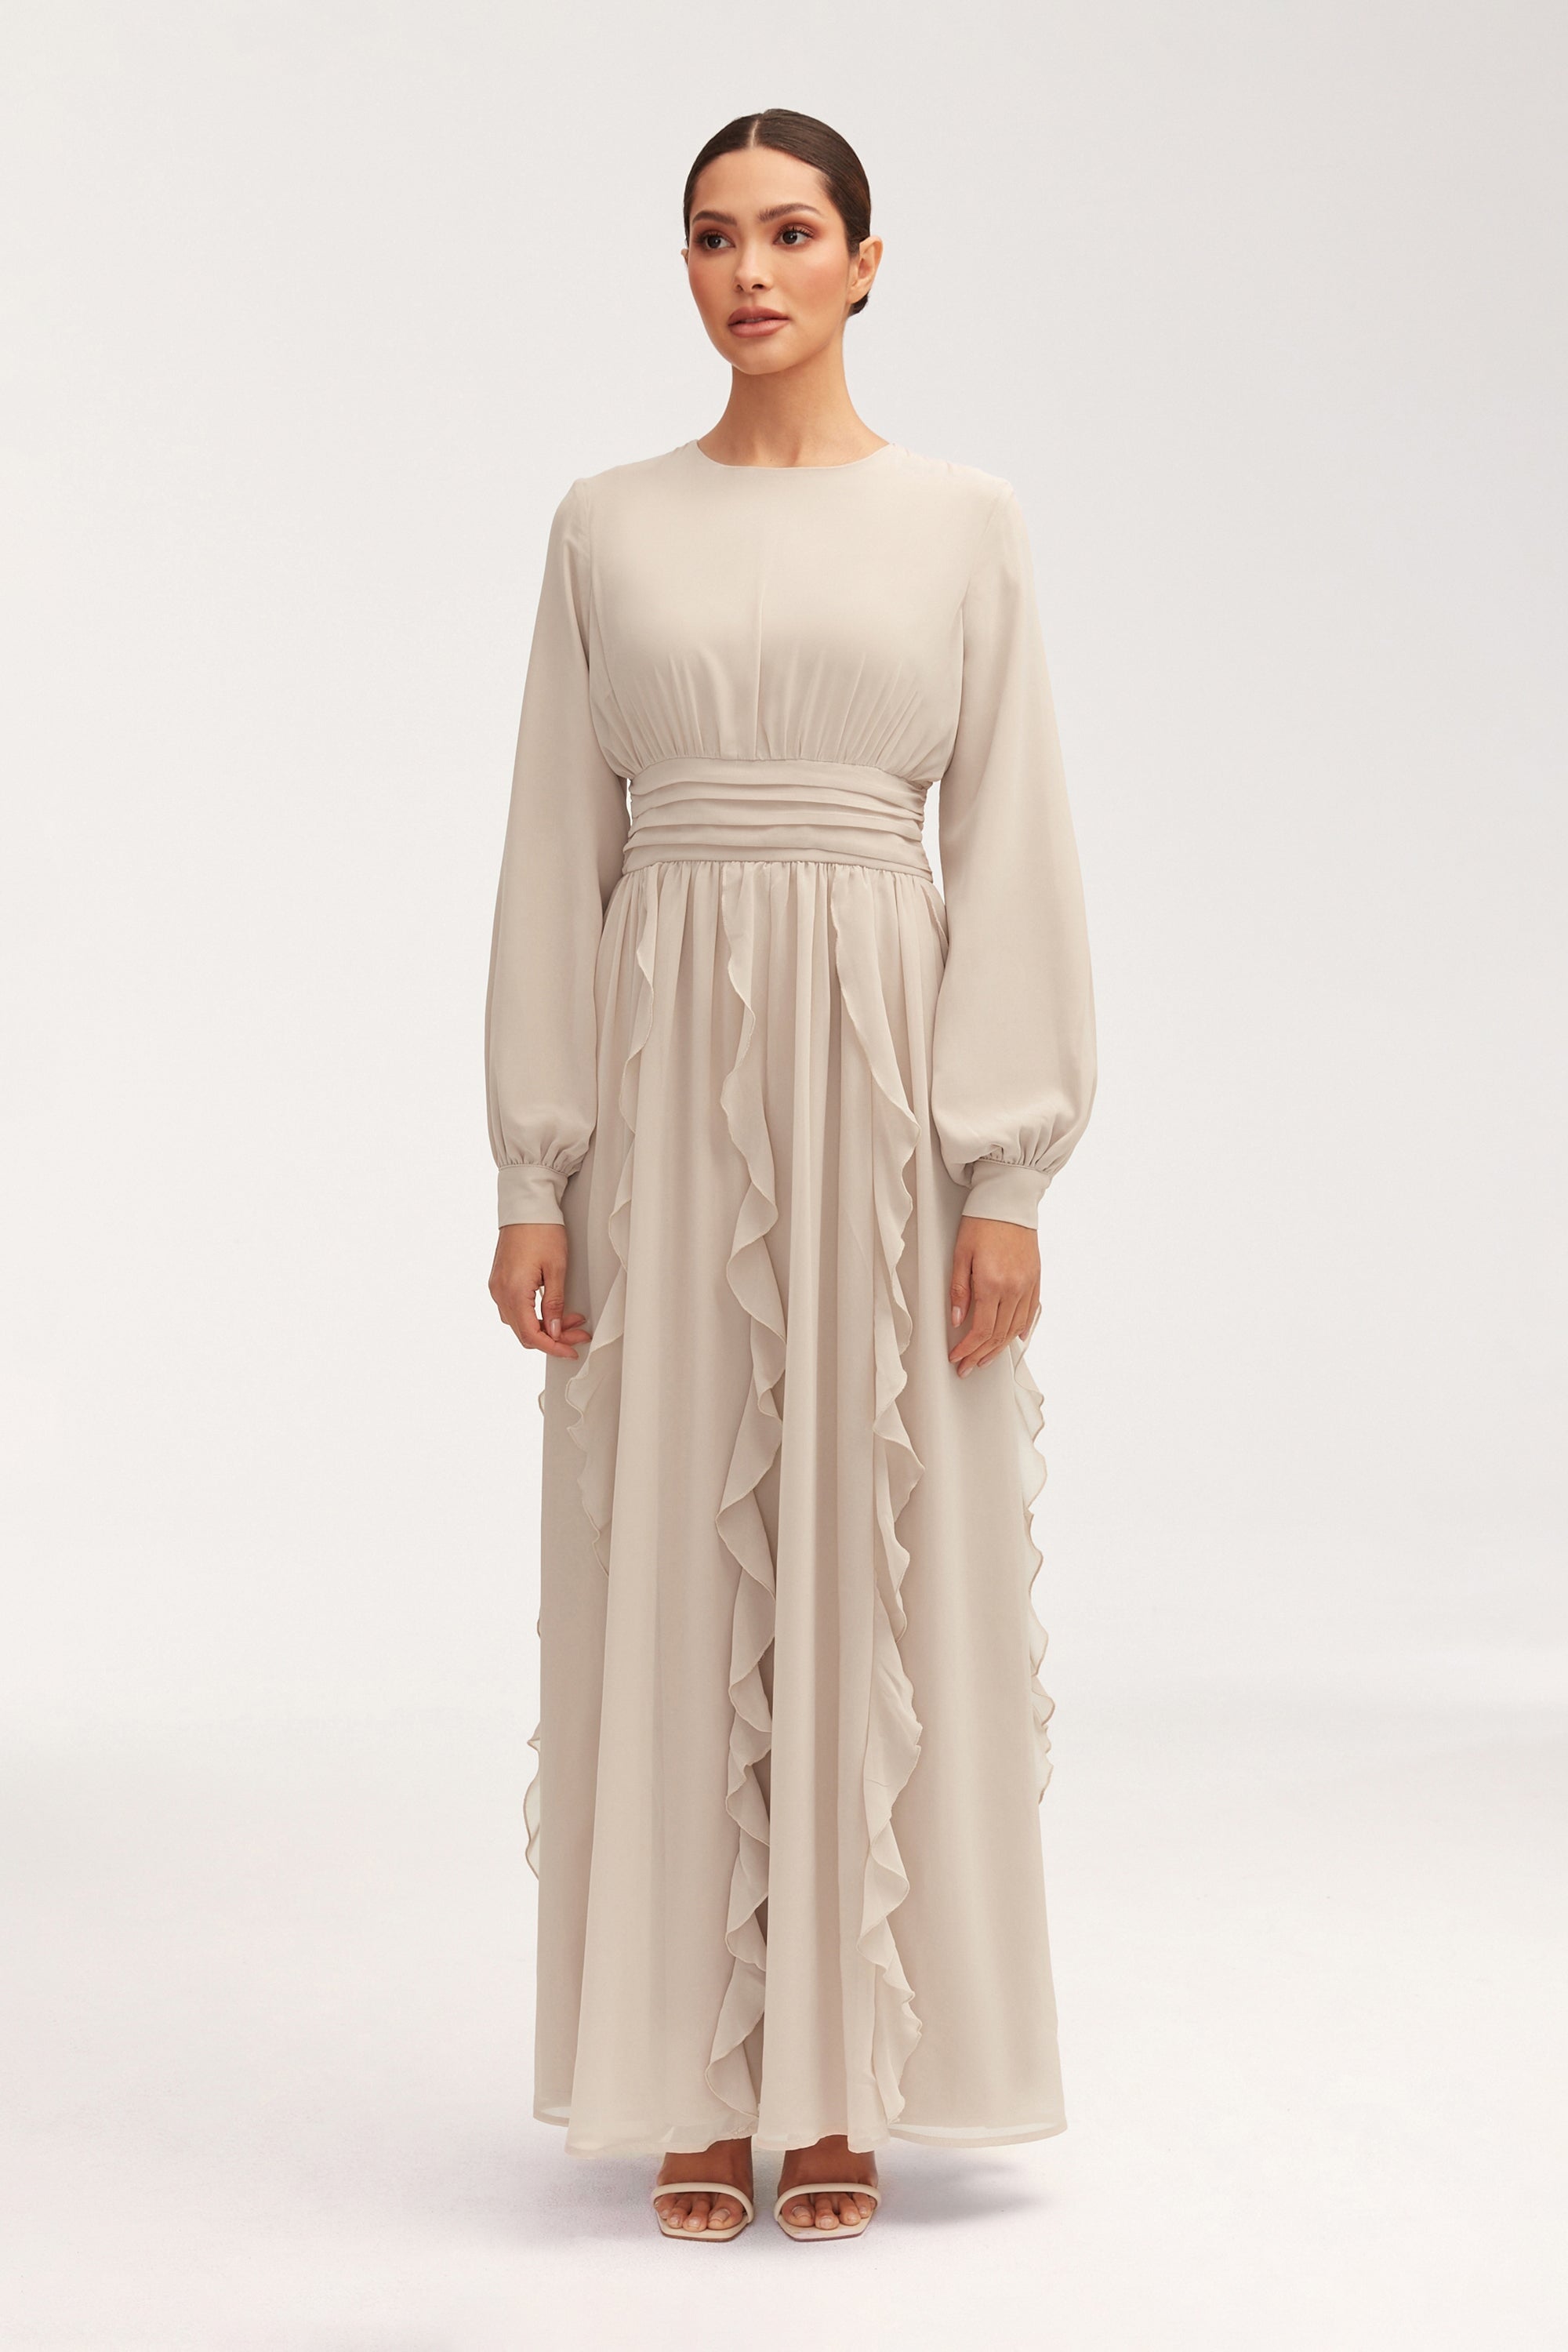 Nesreen Waterfall Chiffon Maxi Dress - Stone Clothing Veiled 